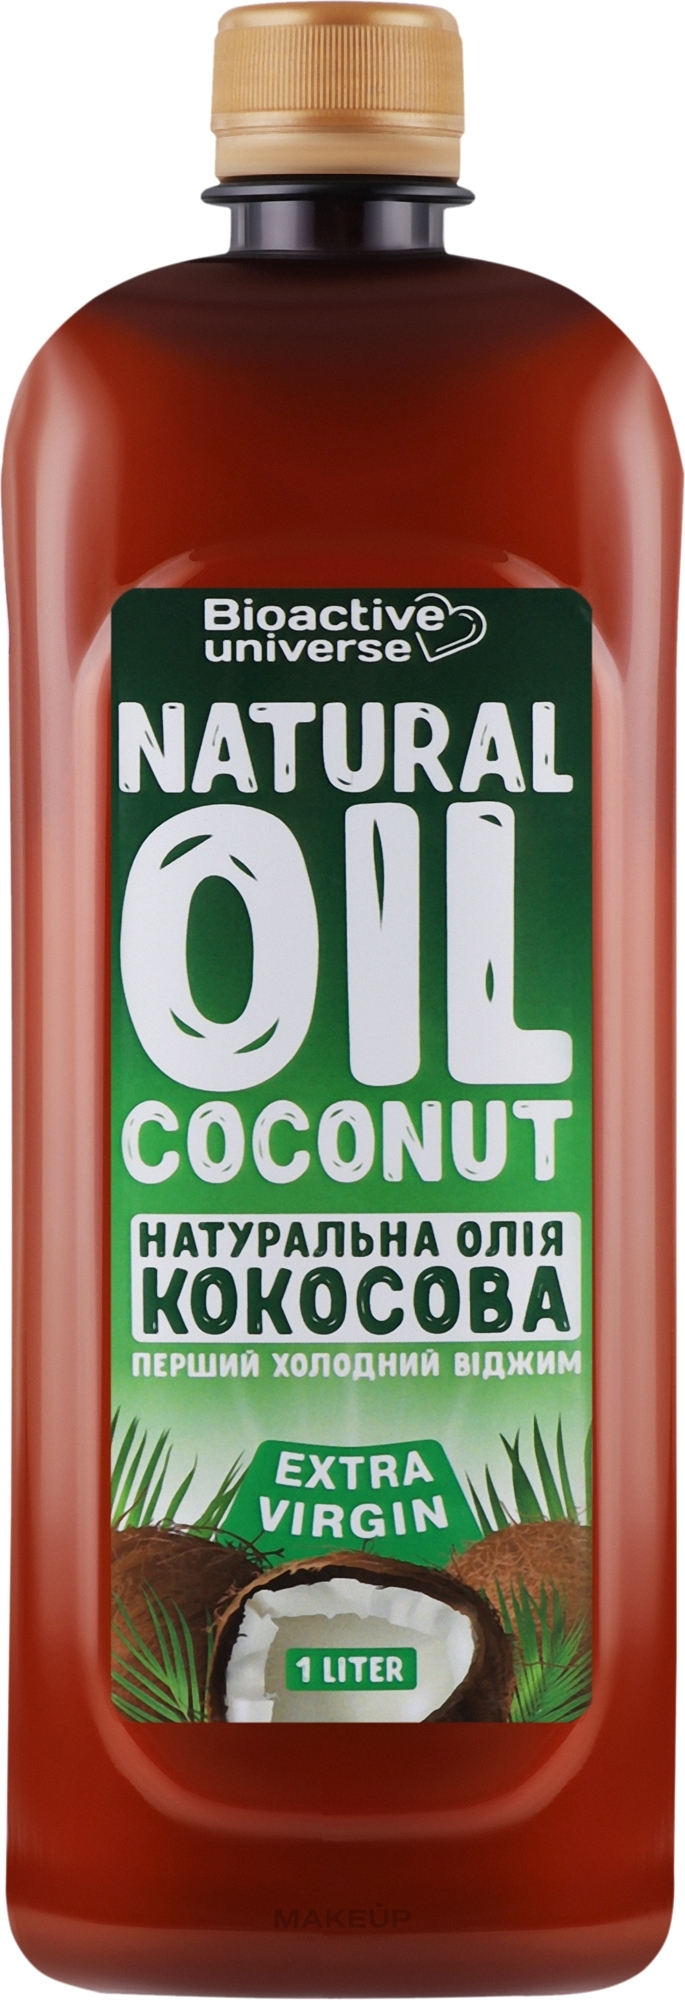 Кокосова олія нерафінована, першого холодного віджиму - Bioactive Universe Natural Oil Coconut — фото 1000ml